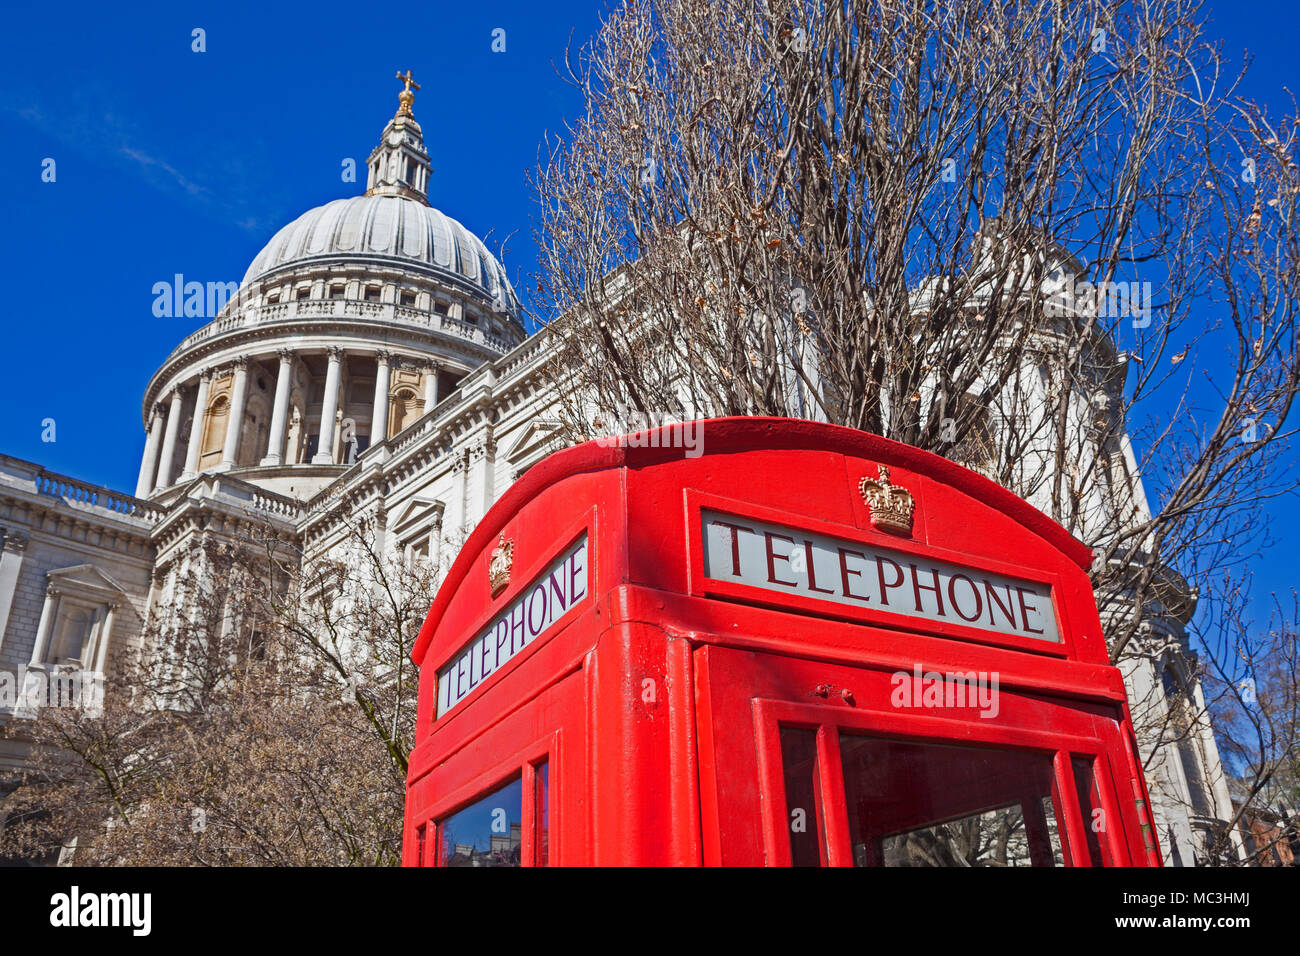 Ville de Londres un téléphone rouge traditionnel fort à St Paul's Cathedral Gardens contrastant avec la Cathédrale elle-même Banque D'Images